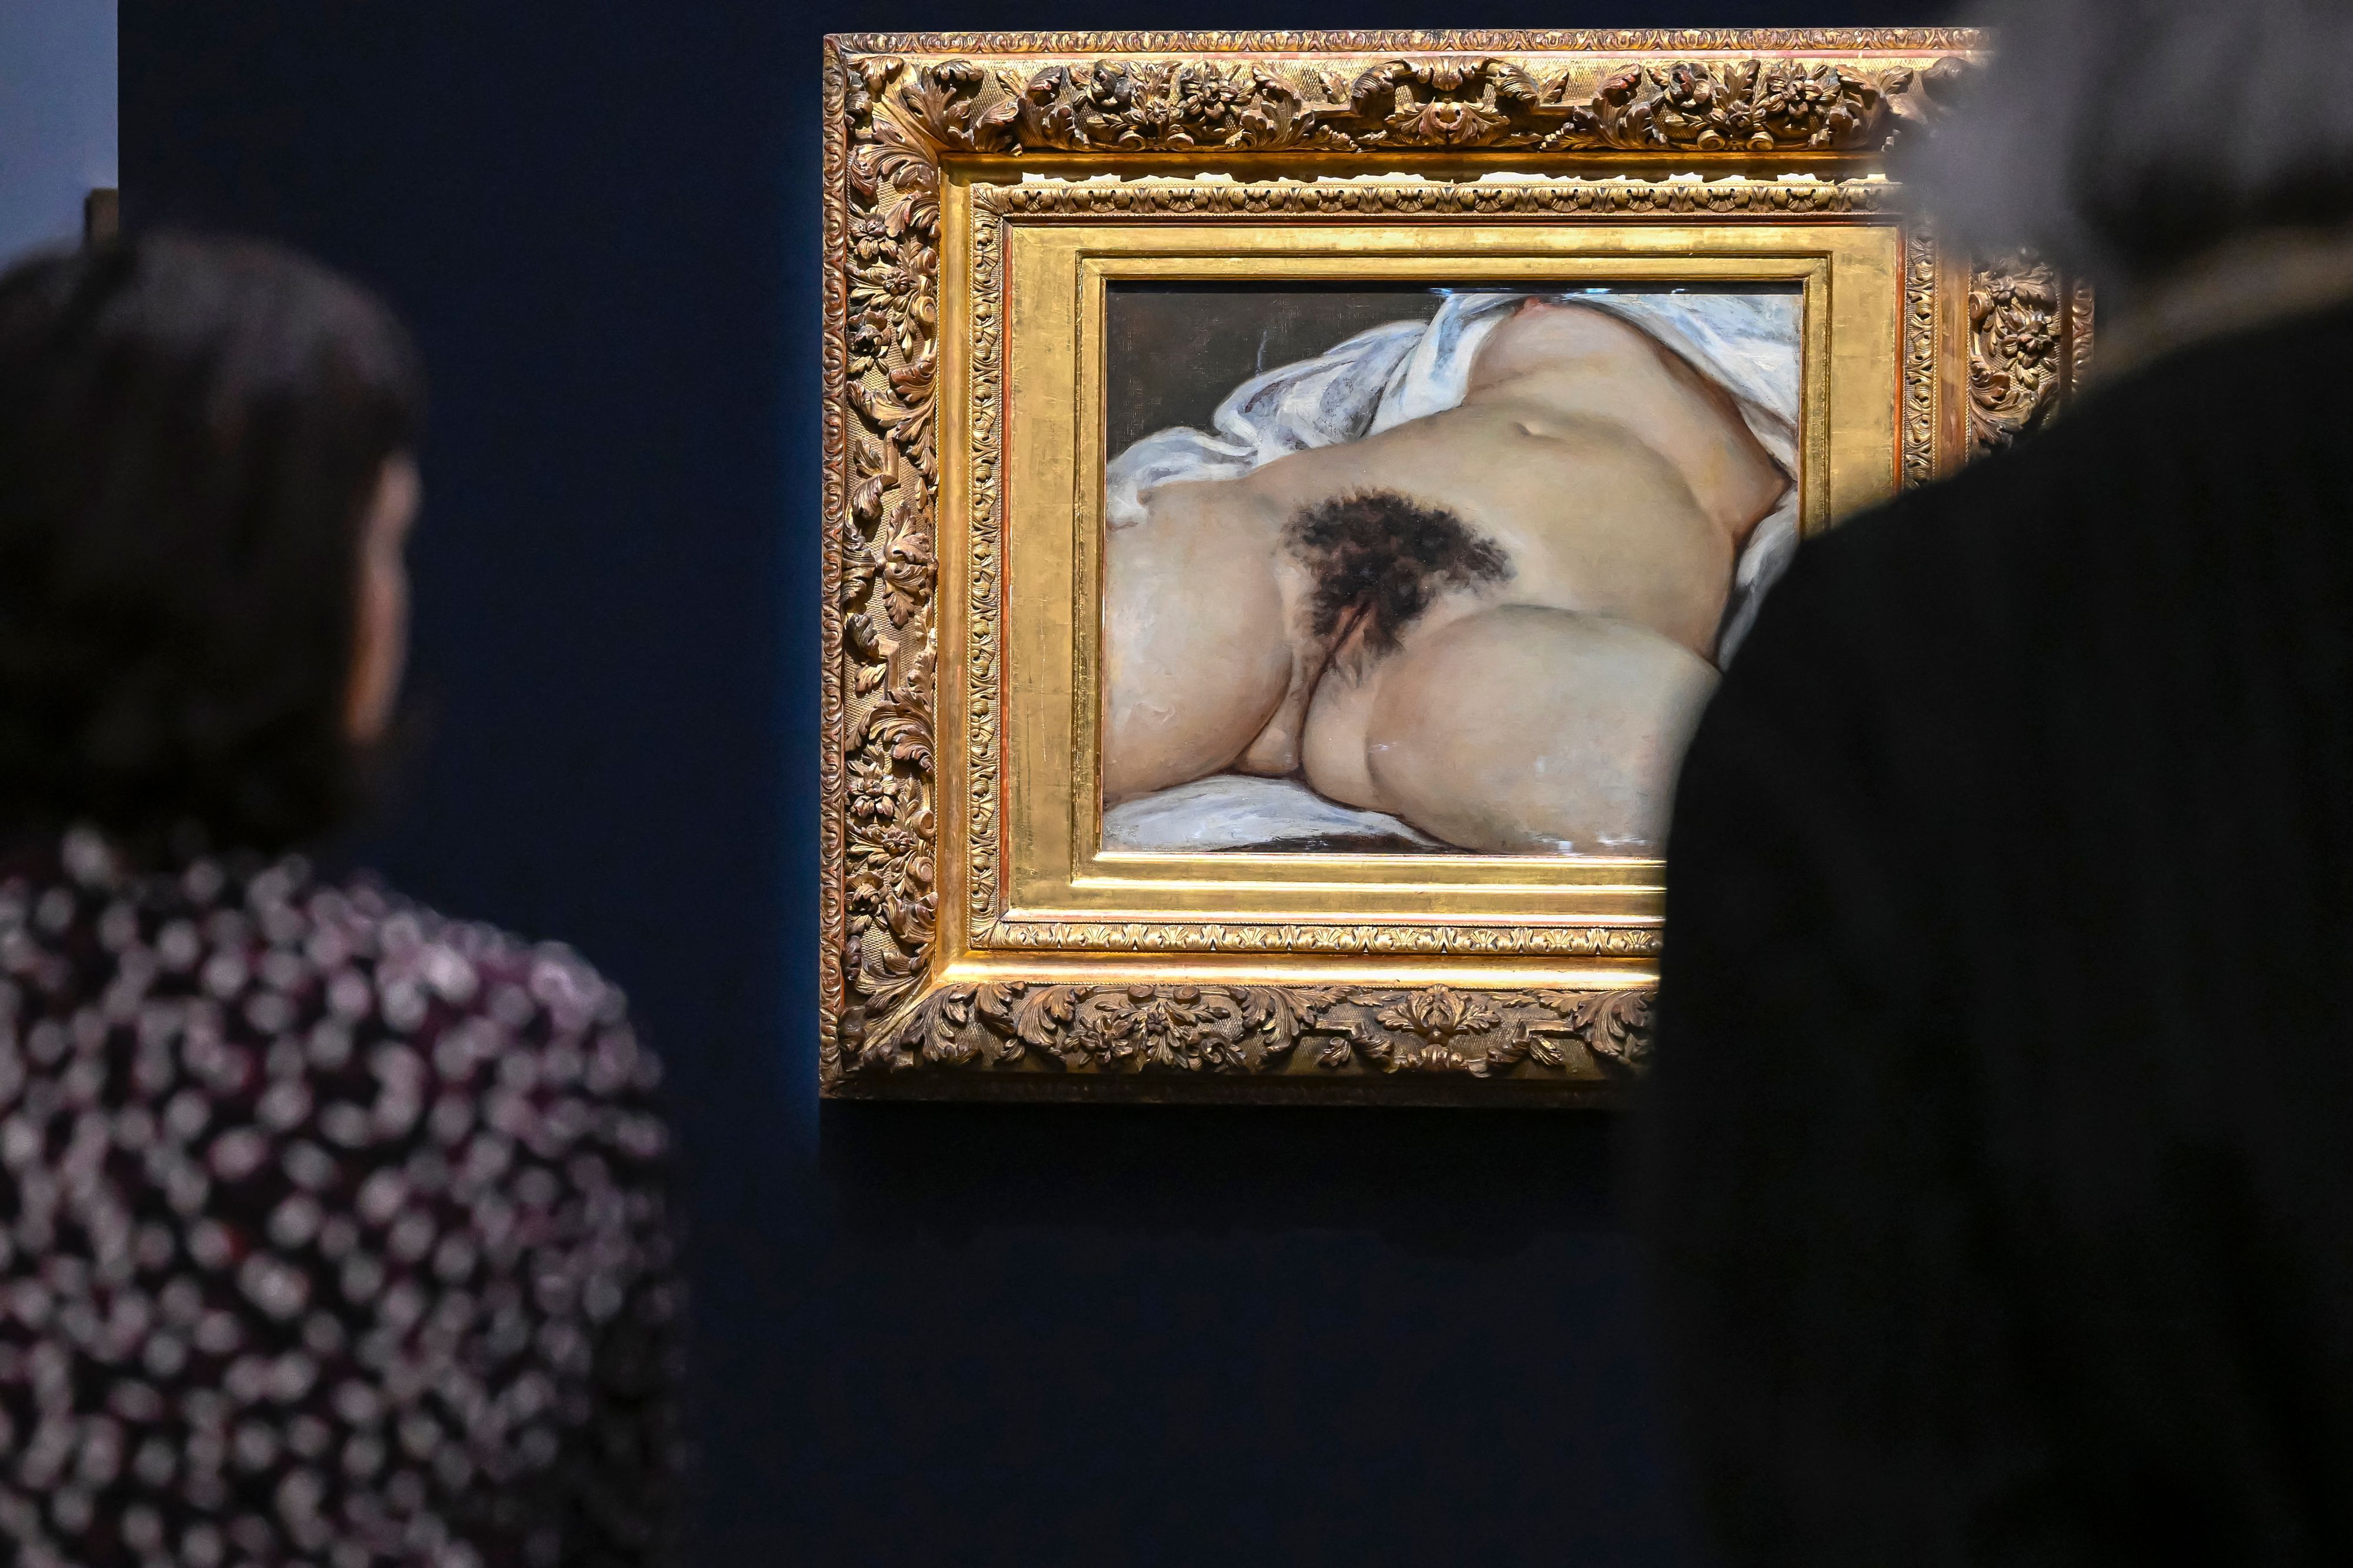 Le musée d'Orsay porte plainte, la performeuse s'offusque